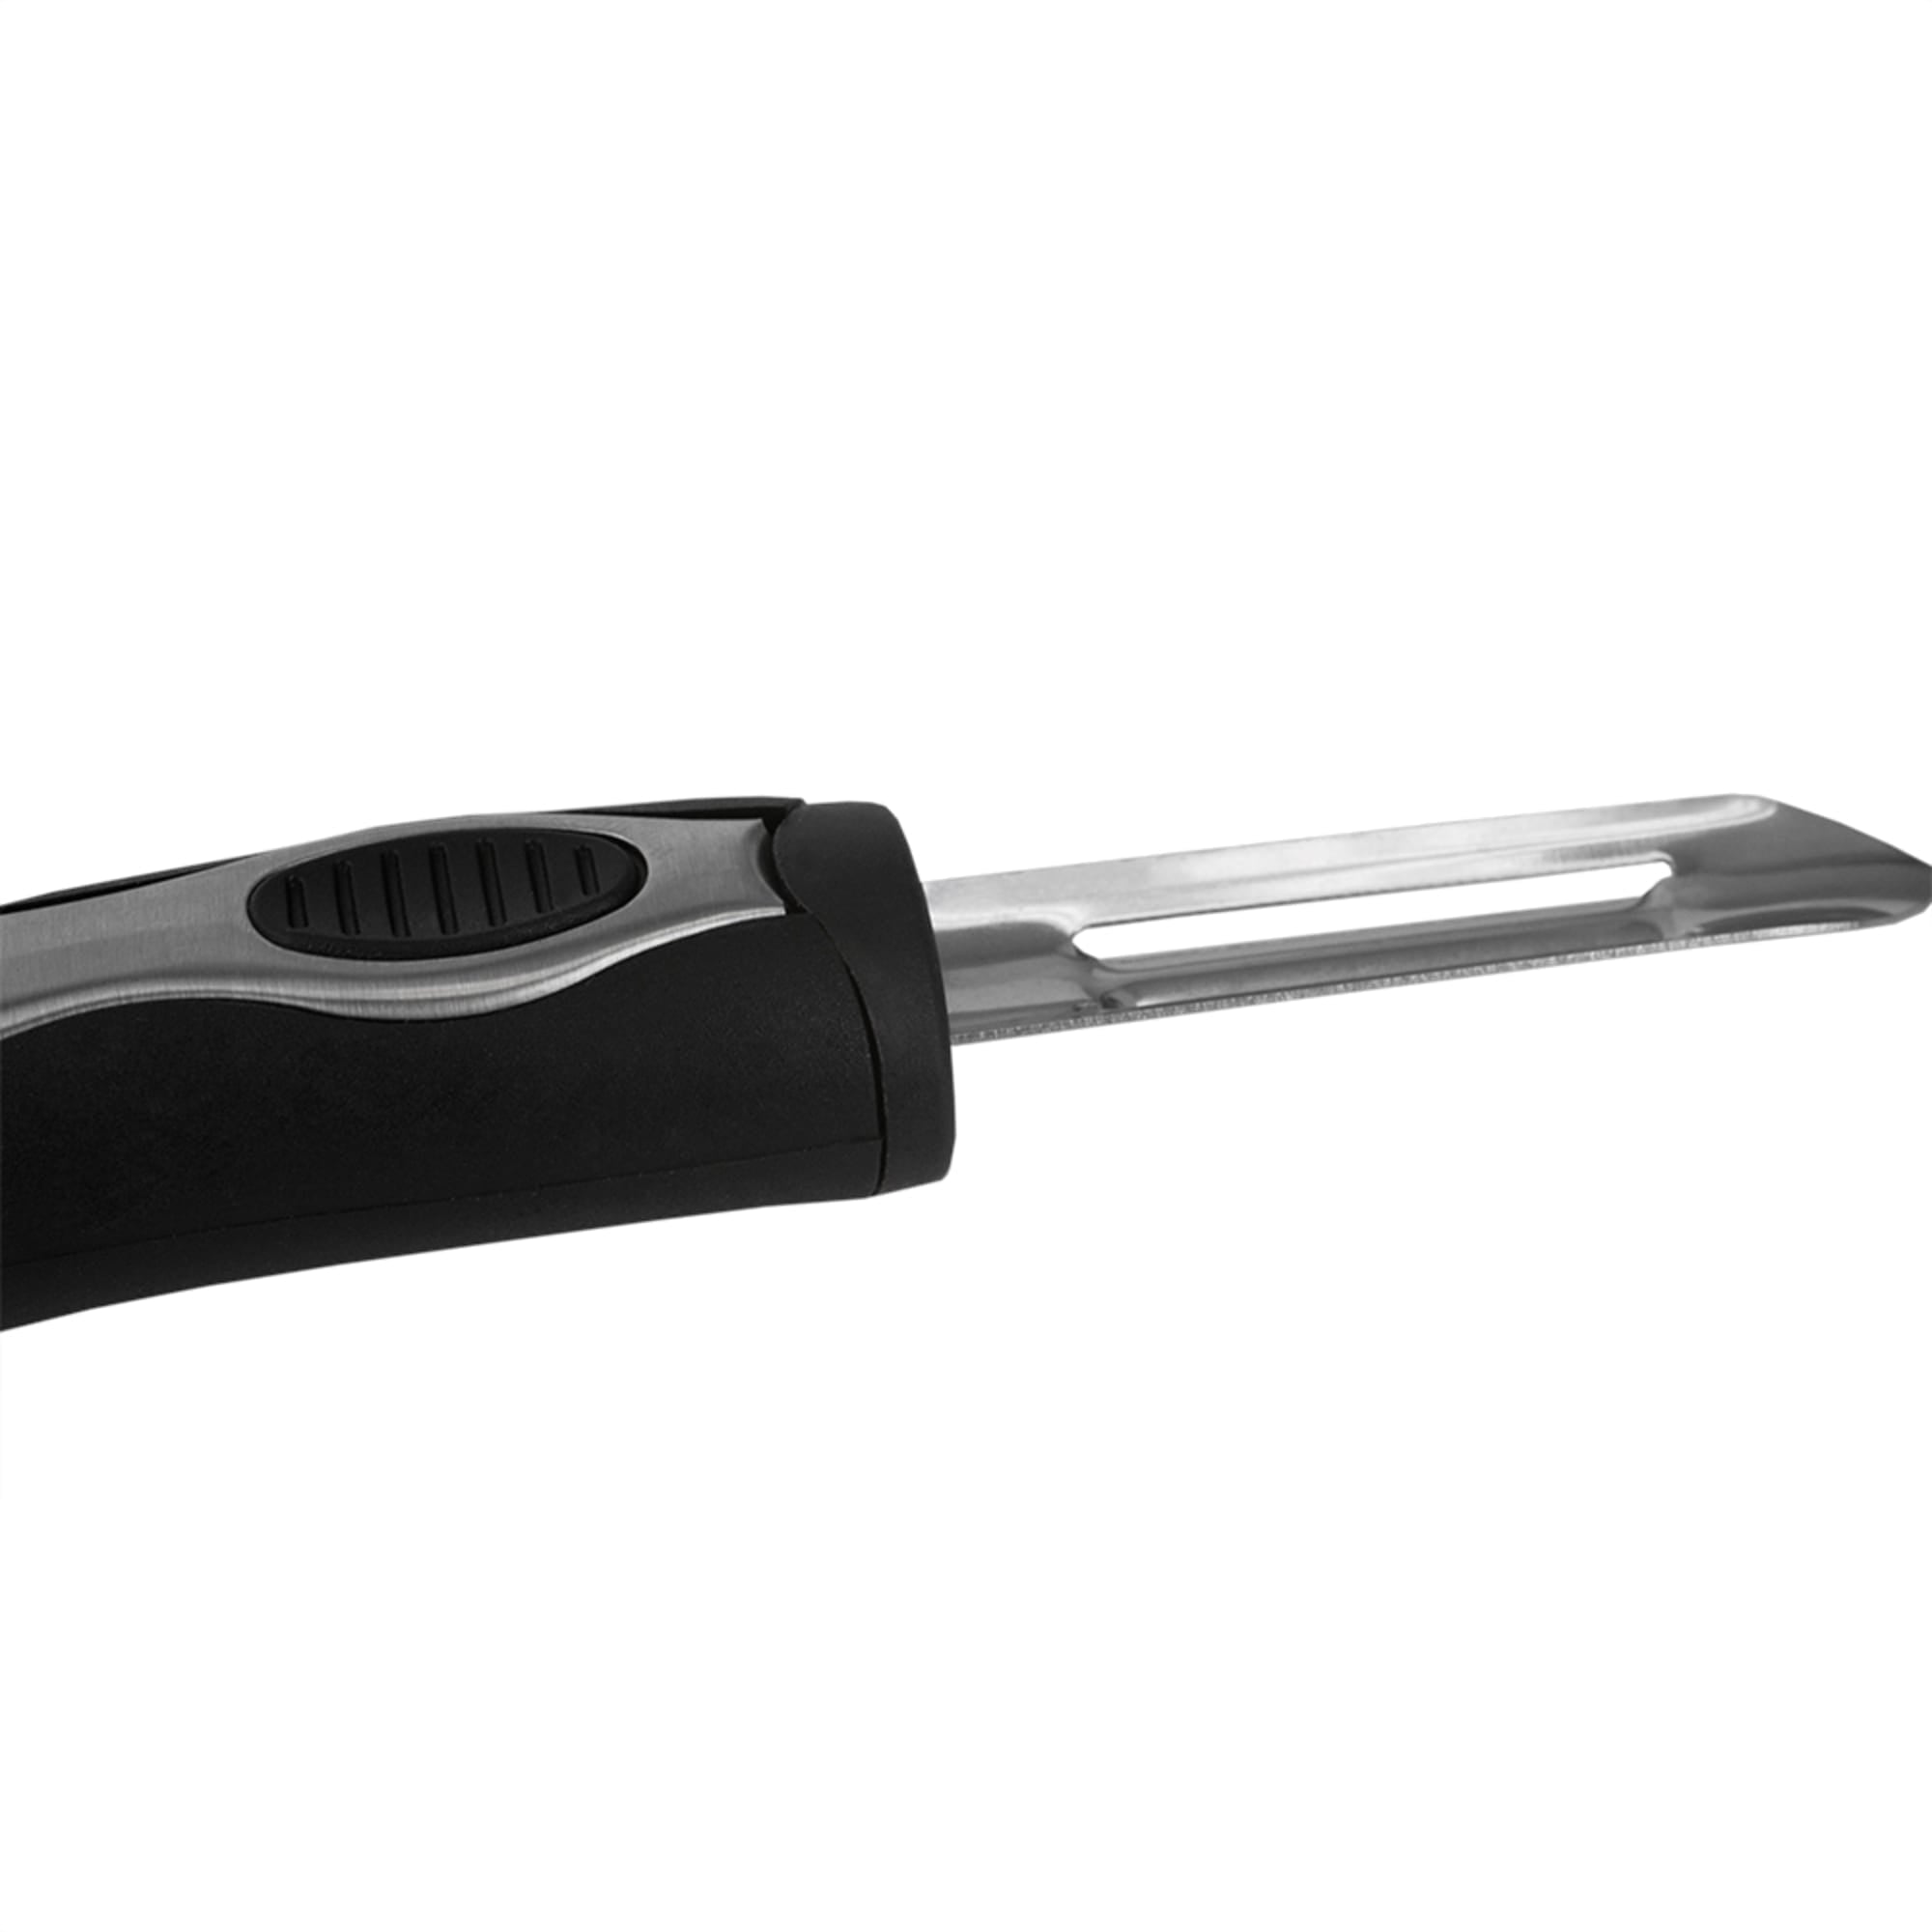 Home Basics Stainless Steel Knife Sharpener $2.00 EACH, CASE PACK OF 24